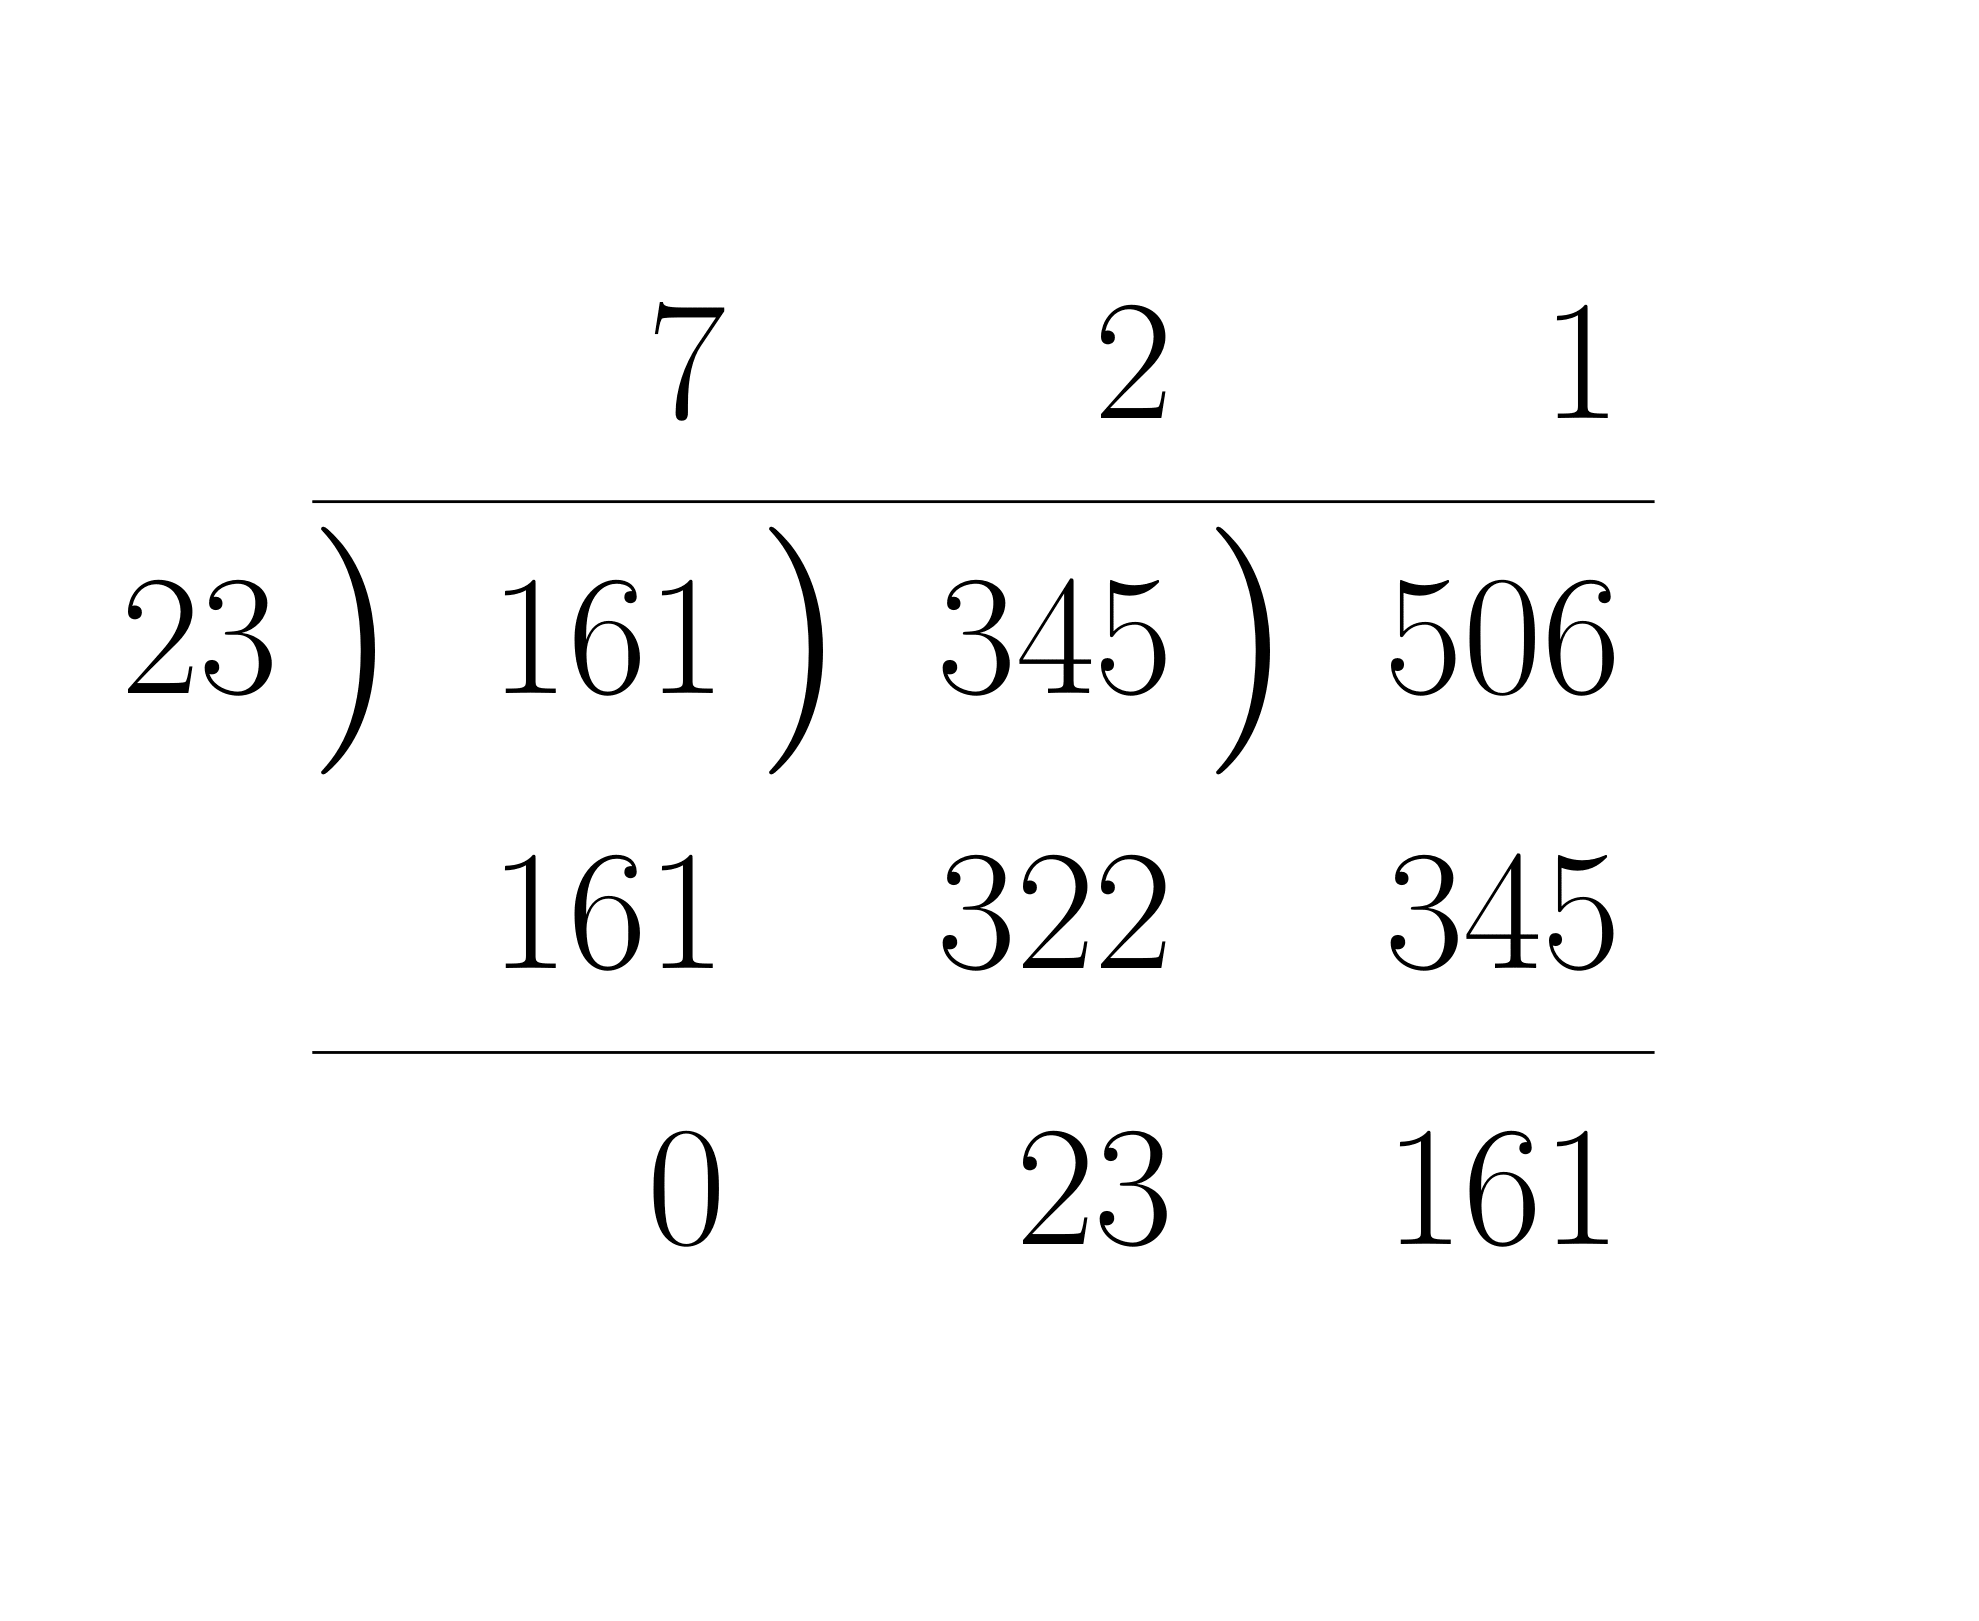 ユークリッドの互除法による最大公約数の求め方の計算法3